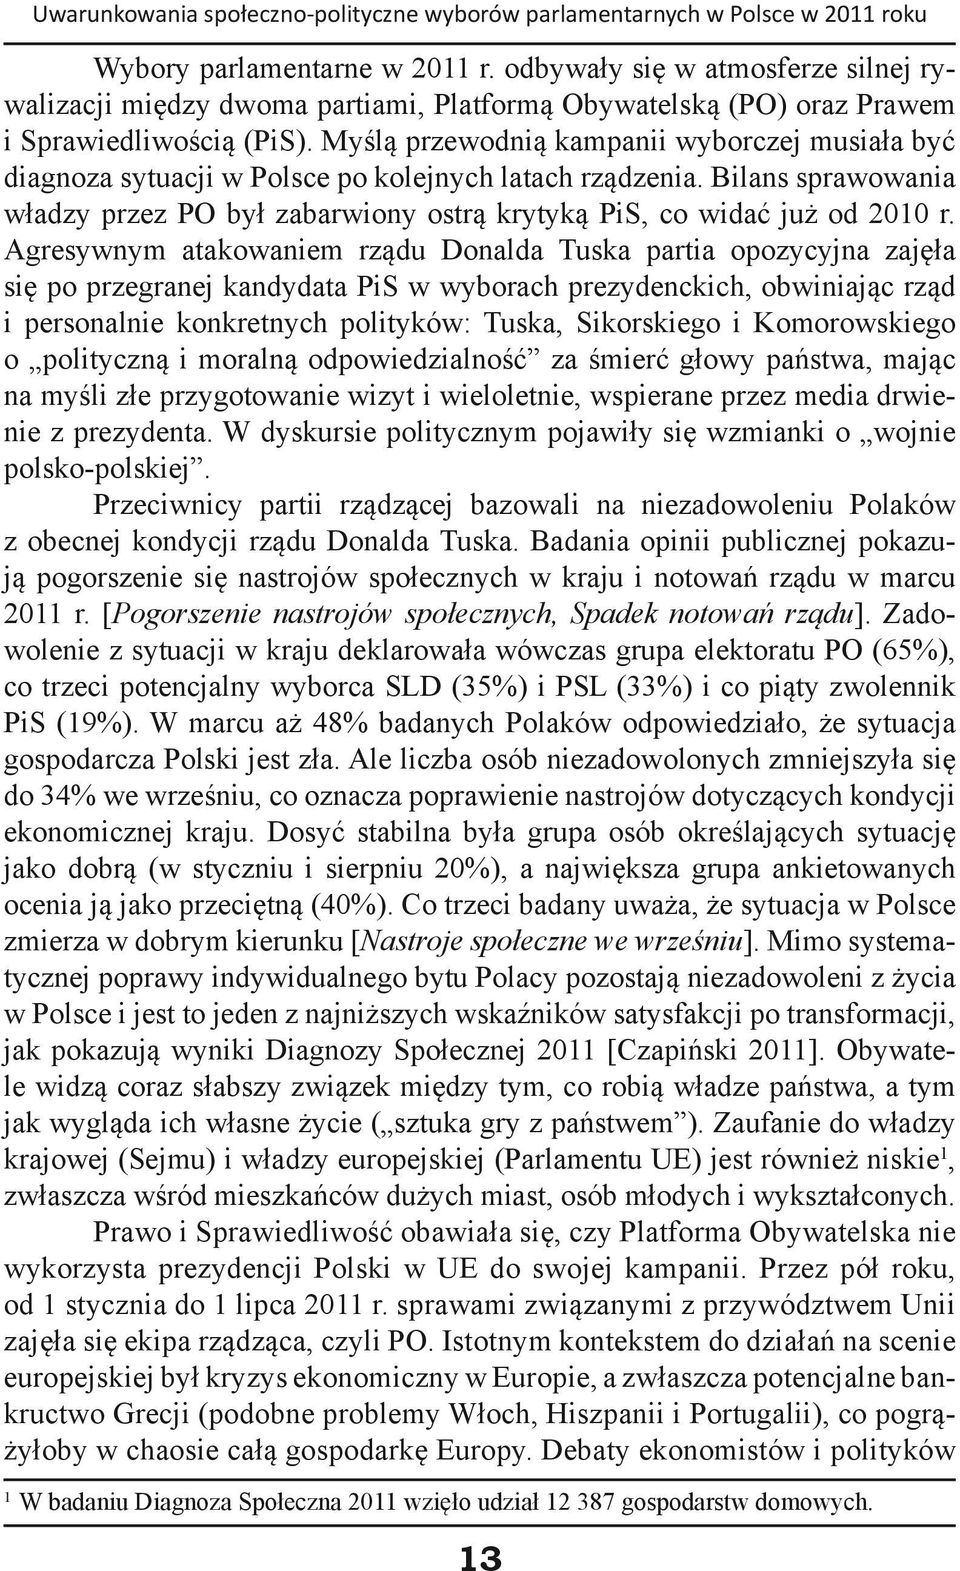 Myślą przewodnią kampanii wyborczej musiała być diagnoza sytuacji w Polsce po kolejnych latach rządzenia. Bilans sprawowania władzy przez PO był zabarwiony ostrą krytyką PiS, co widać już od 2010 r.